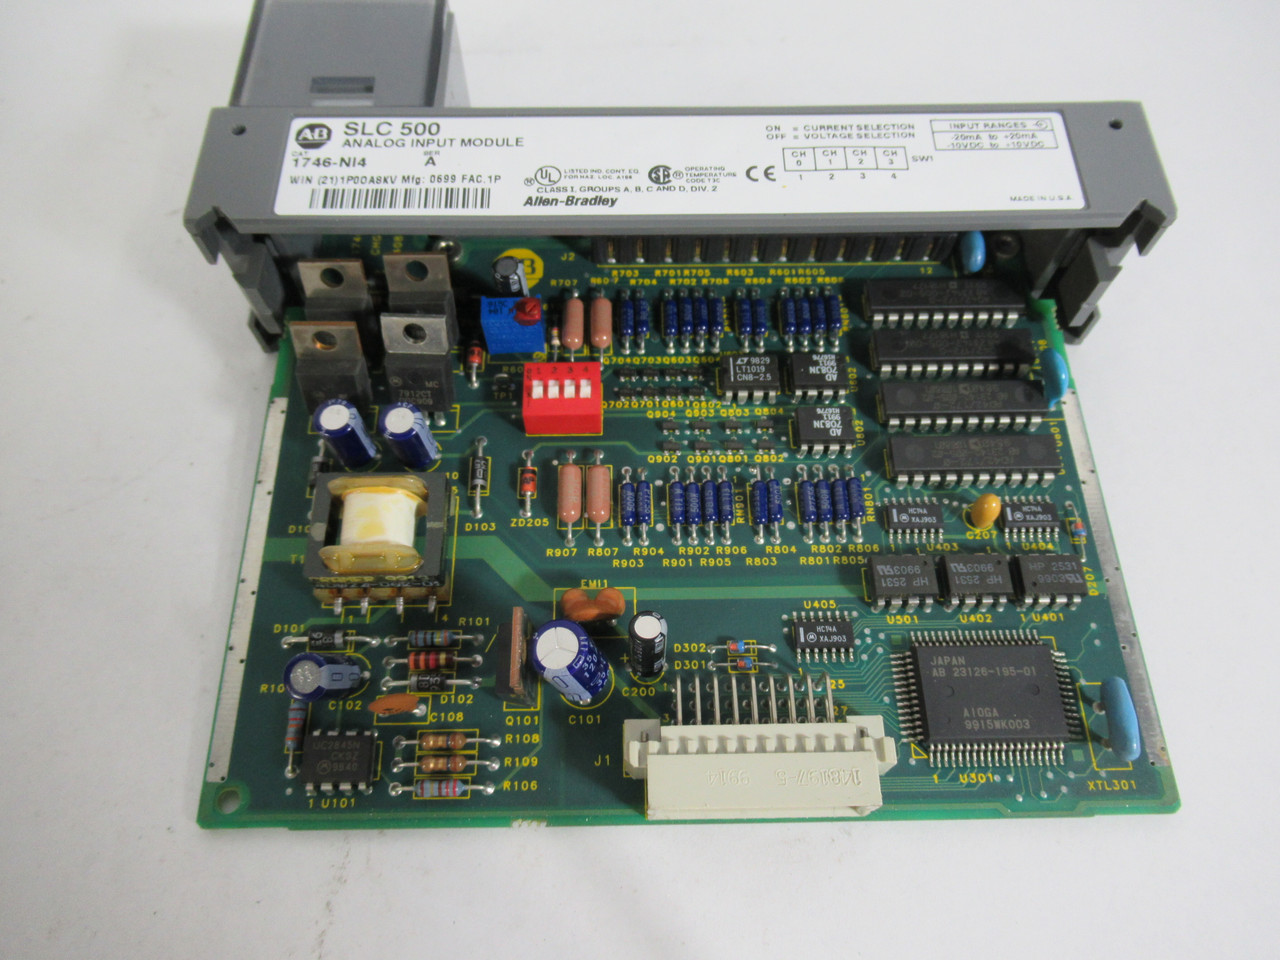 Allen-Bradley 1746-NI4 Ser. A SLC500 Analog Input Module *No Terminal* USED